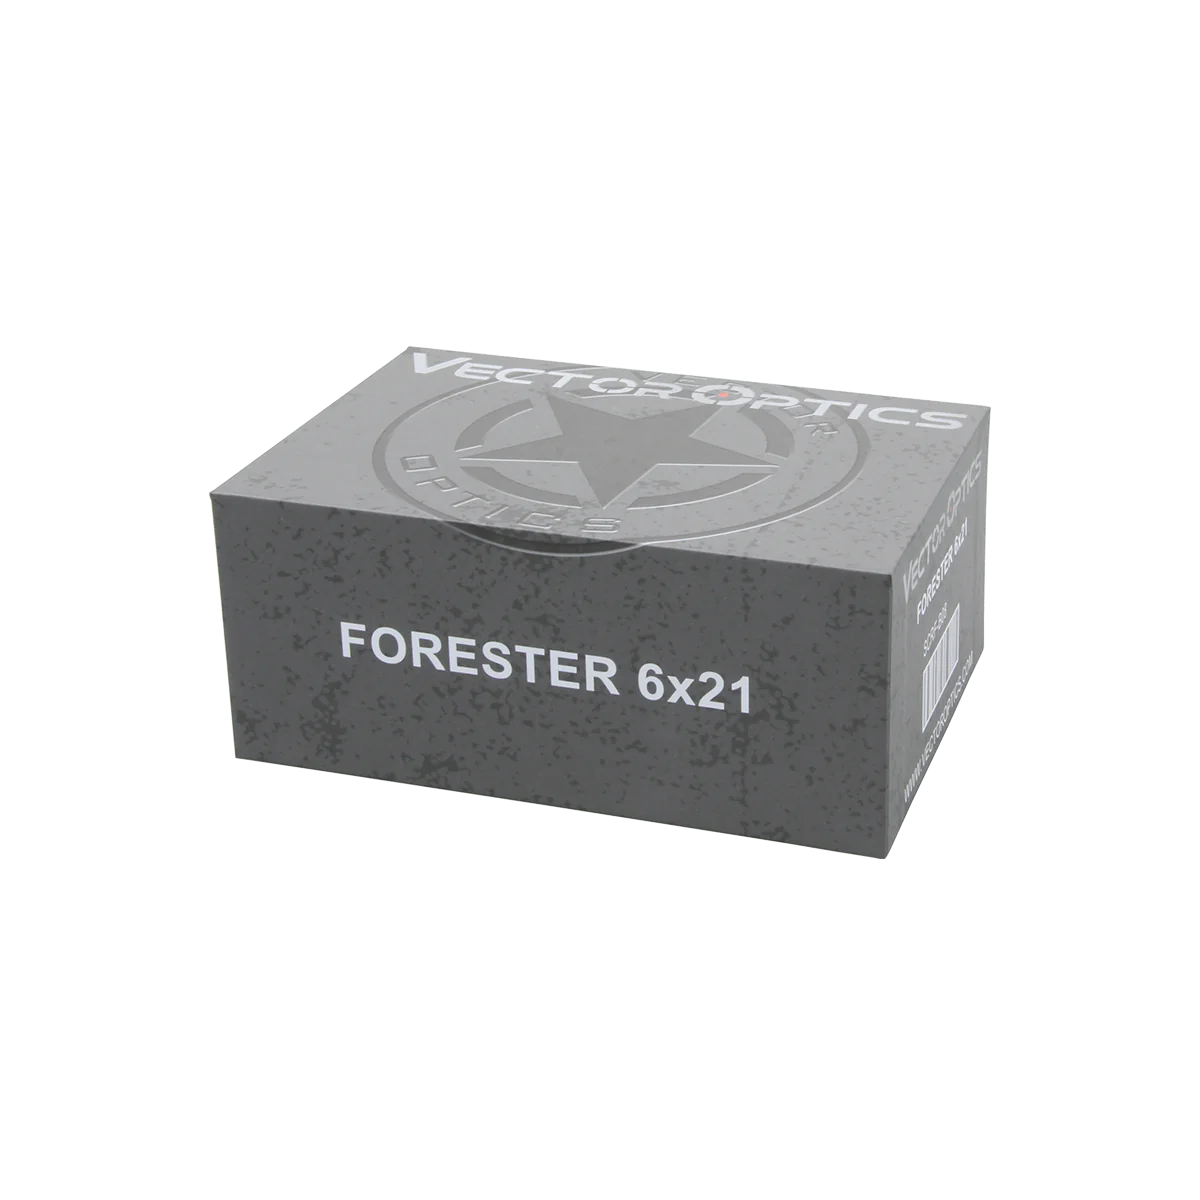 Forester 6x21 Range Finder 800 Yards